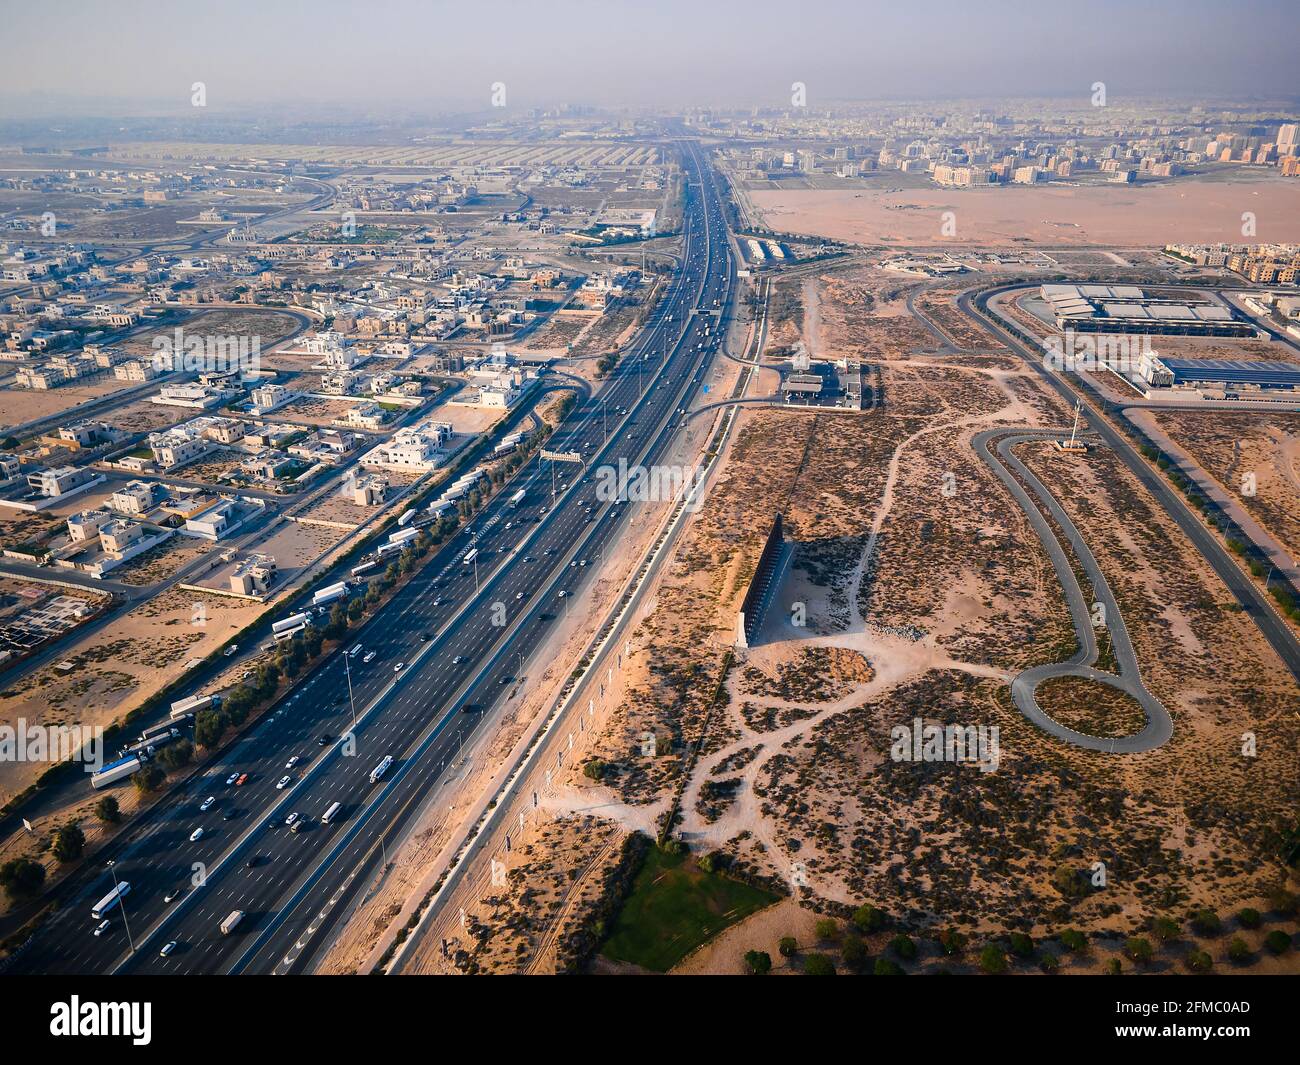 E311 Sheikh Mohammed bin Zayed Road in Dubai Vororte. Hauptautobahn in den Vereinigten Arabischen Emiraten, die mehrere emirate mit Verkehrslast verbindet Stockfoto